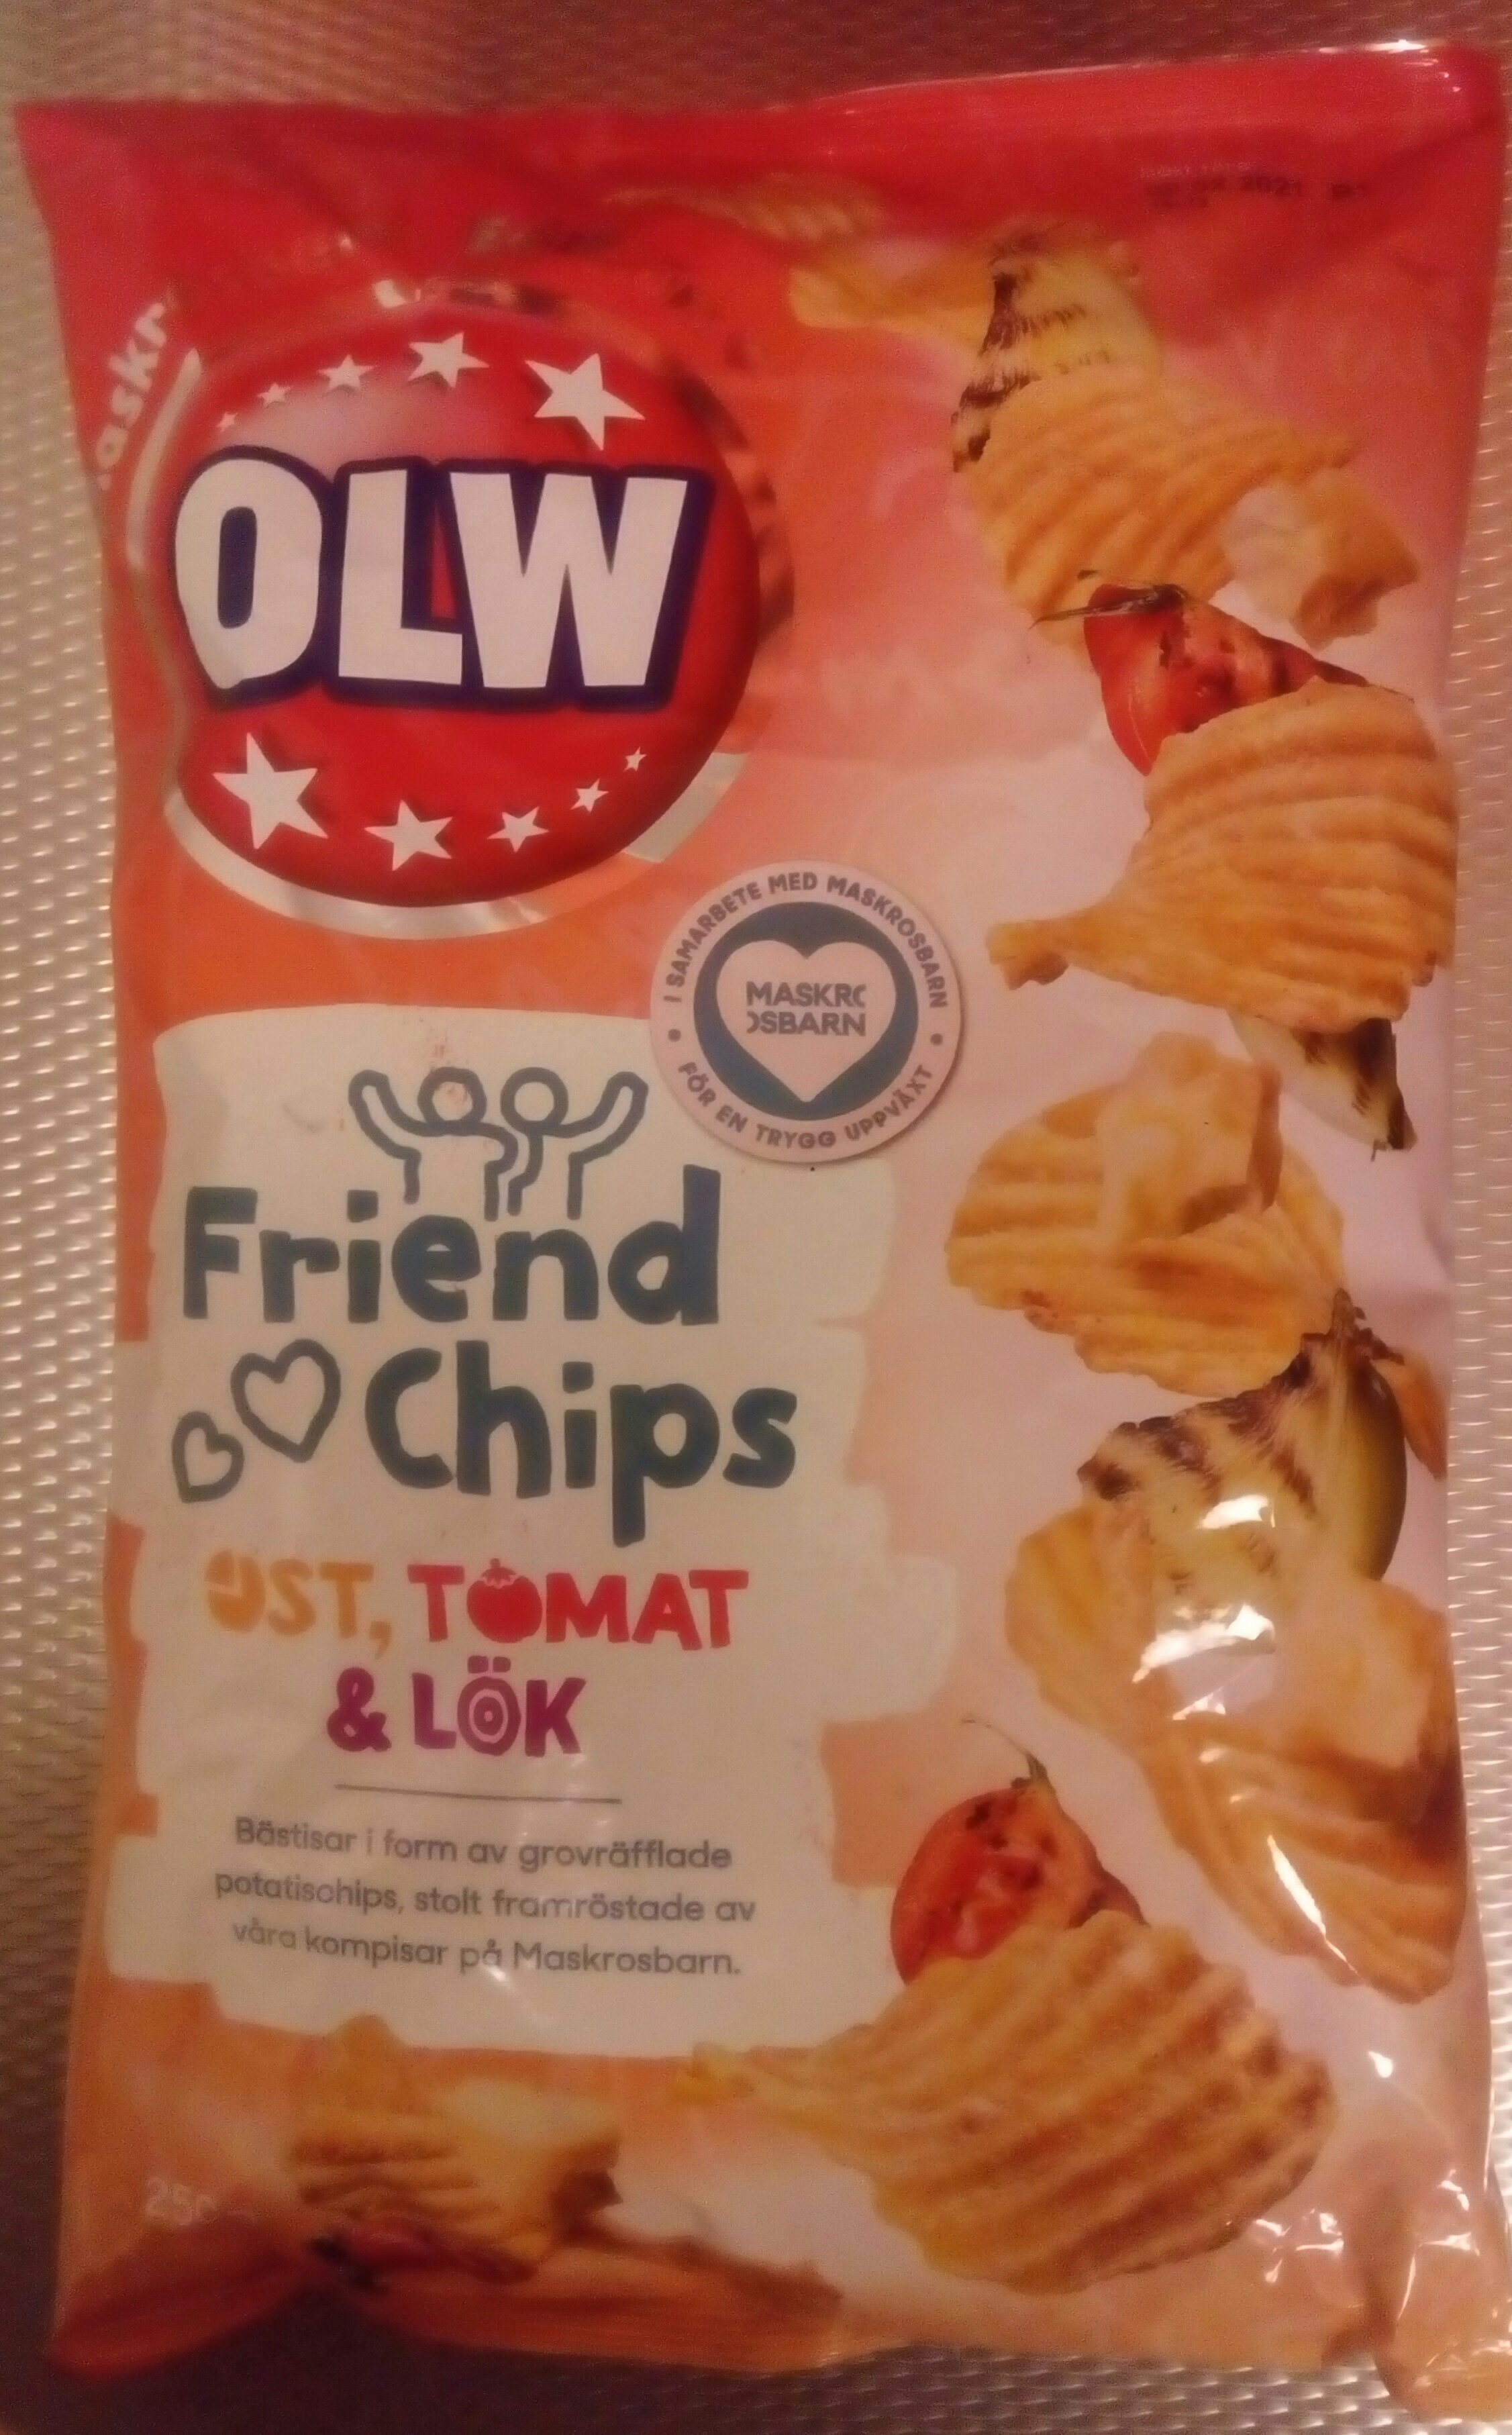 OLW Ost, tomat & lök Maskrosbarn Edition - Produkt - sv